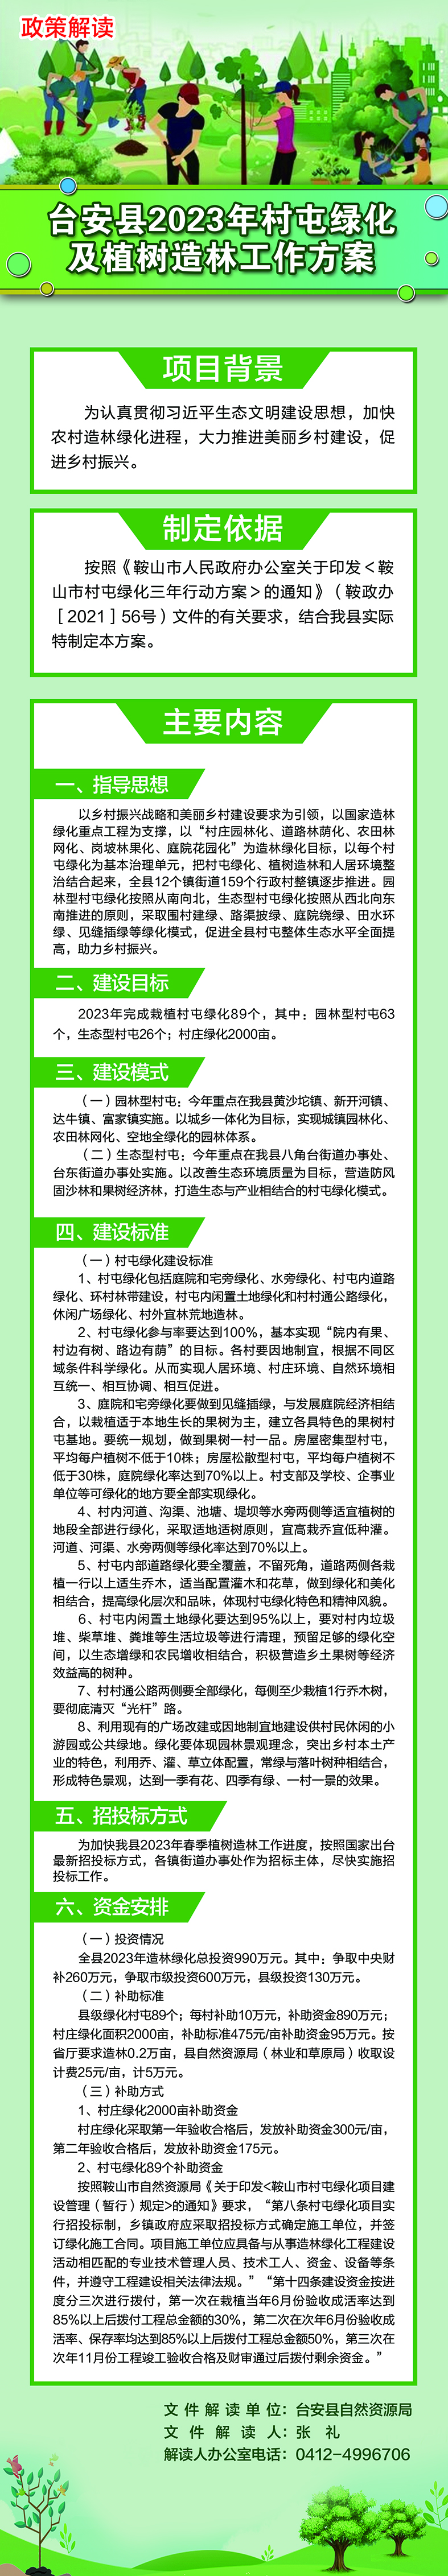 台安县2023年村屯绿化及植树造林工作方案.jpg